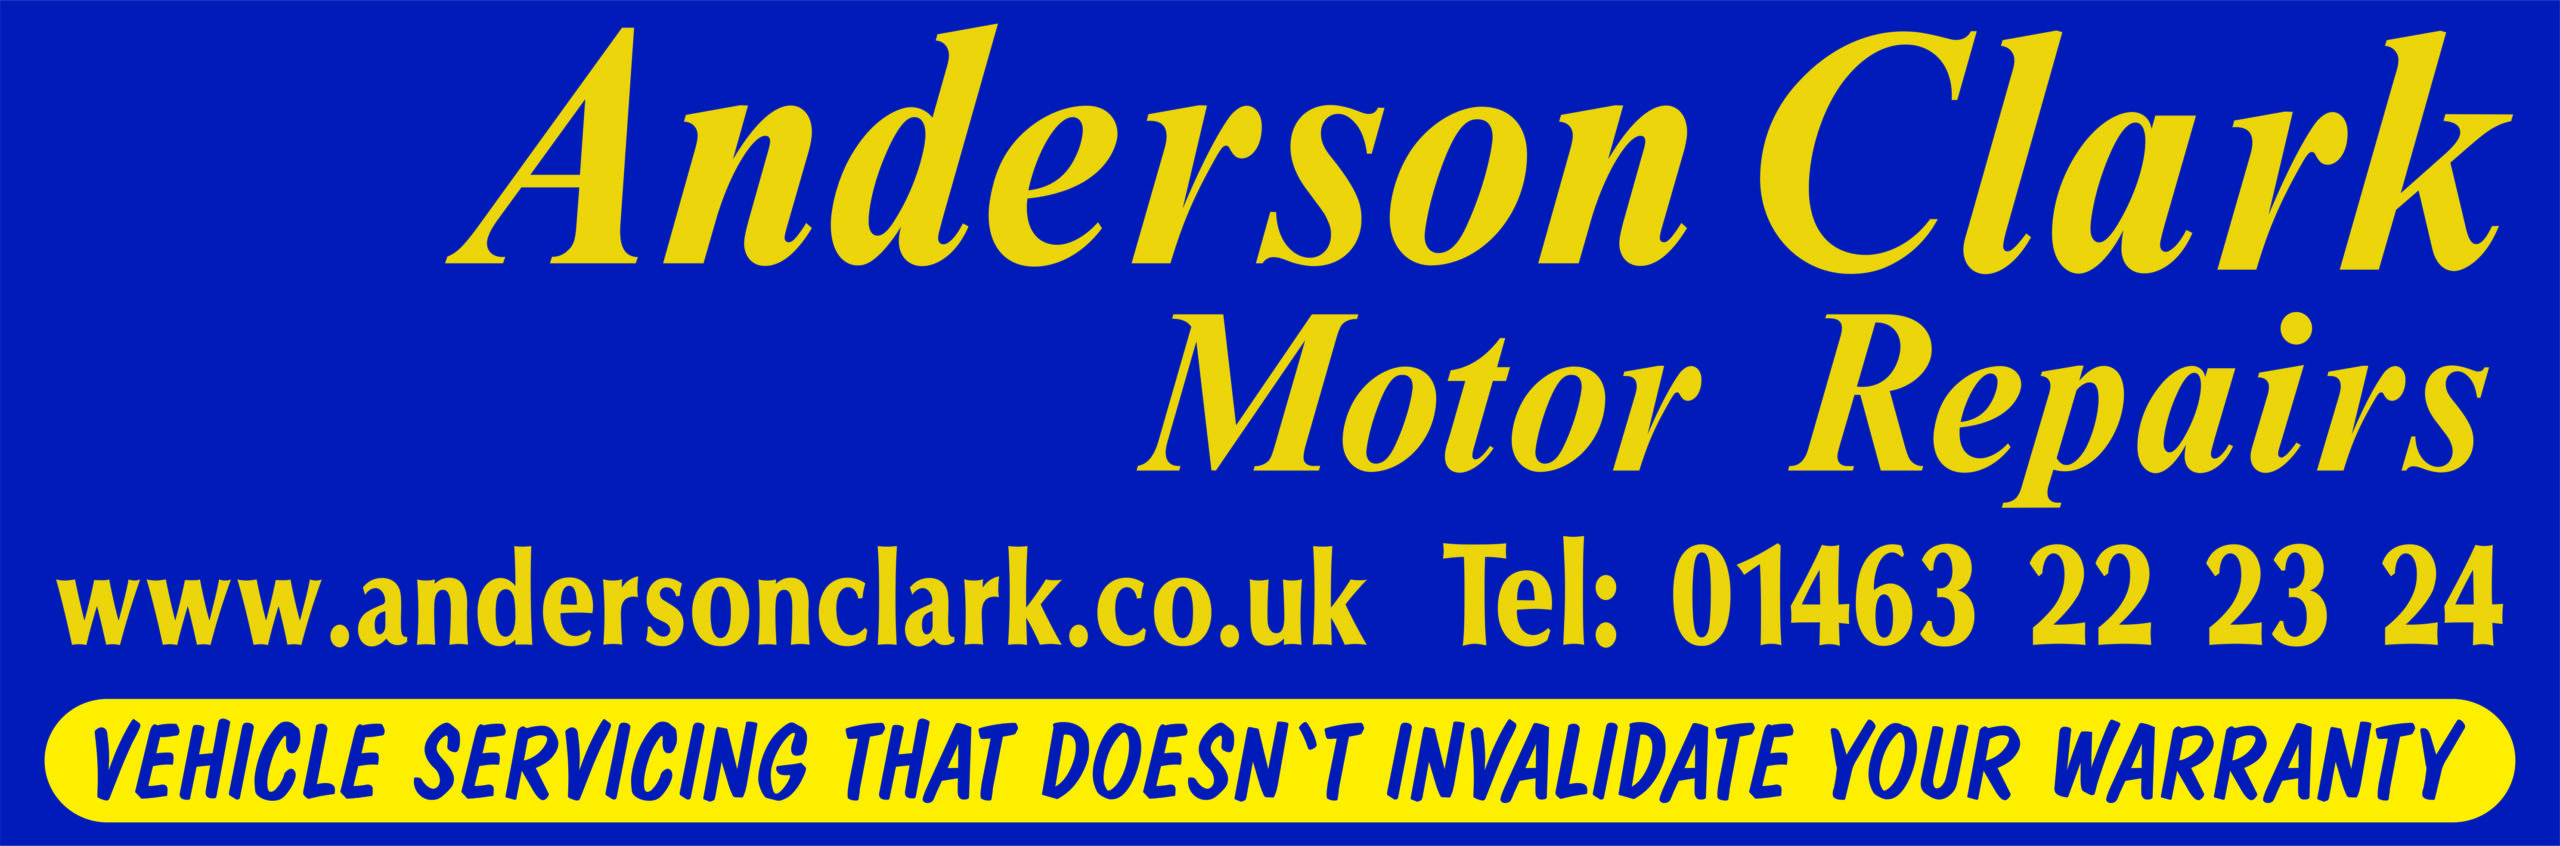 Anderson Clark logo